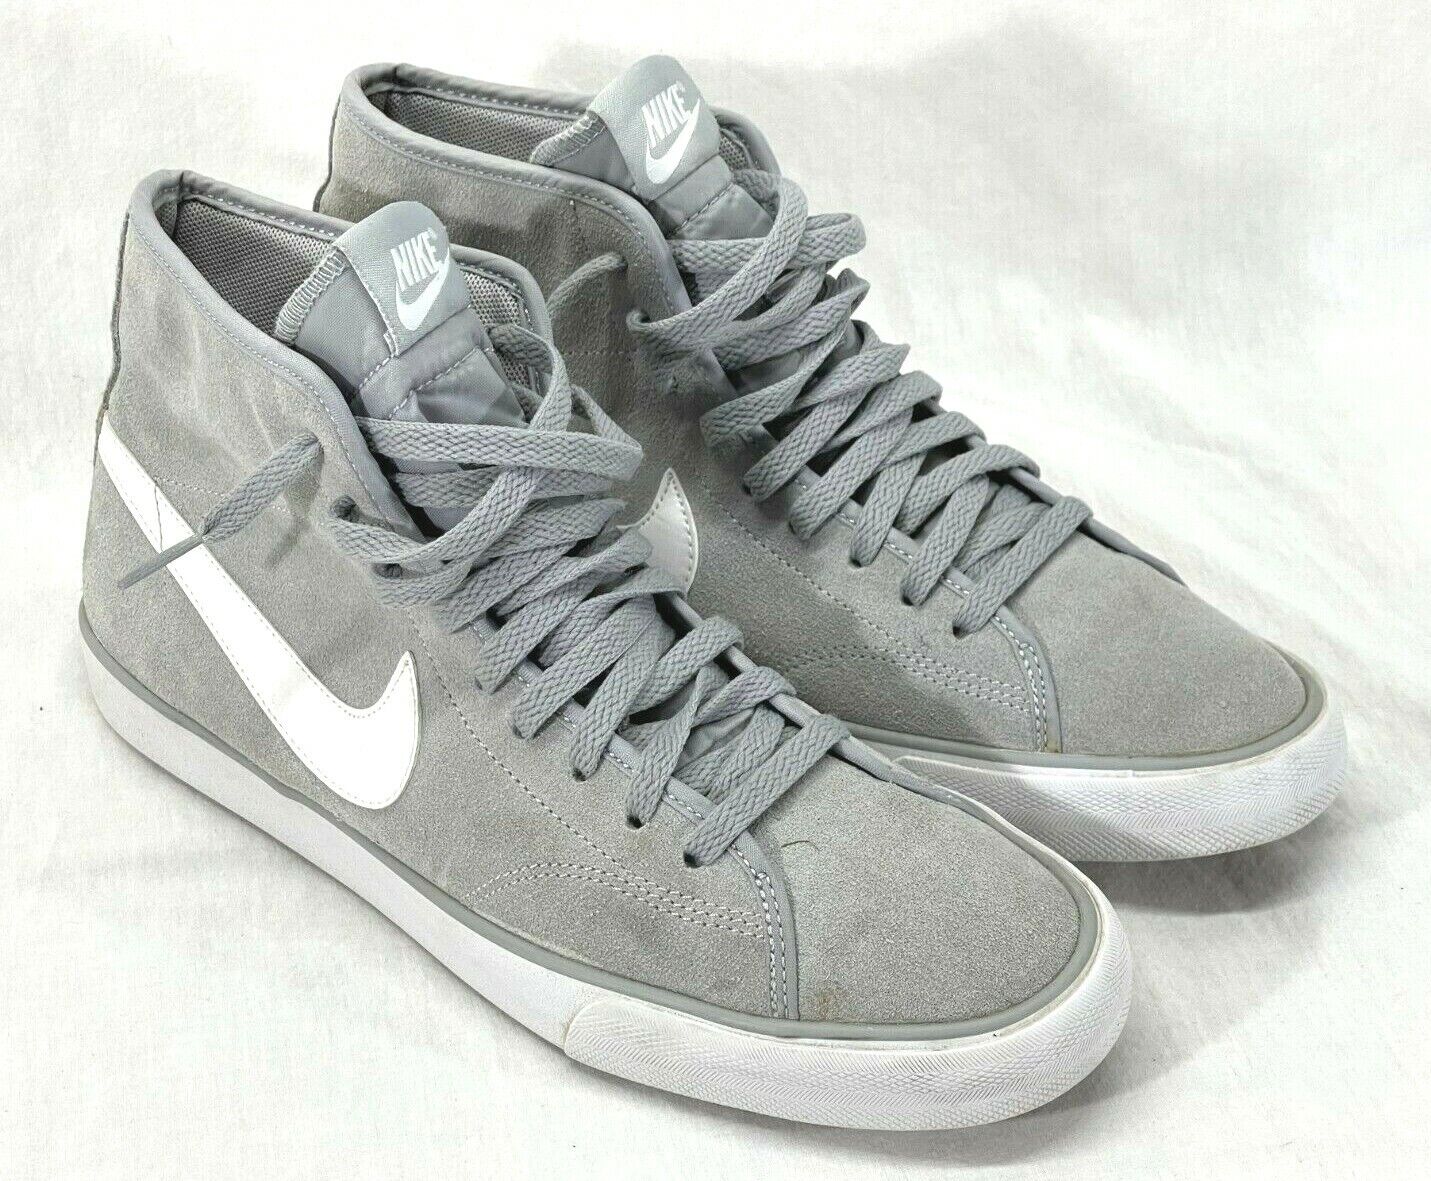 En realidad Desempacando No es suficiente Nike Primo Court Women's Sz 10 Grey Suede Athletic Fashion Sneakers  630656-010 | eBay